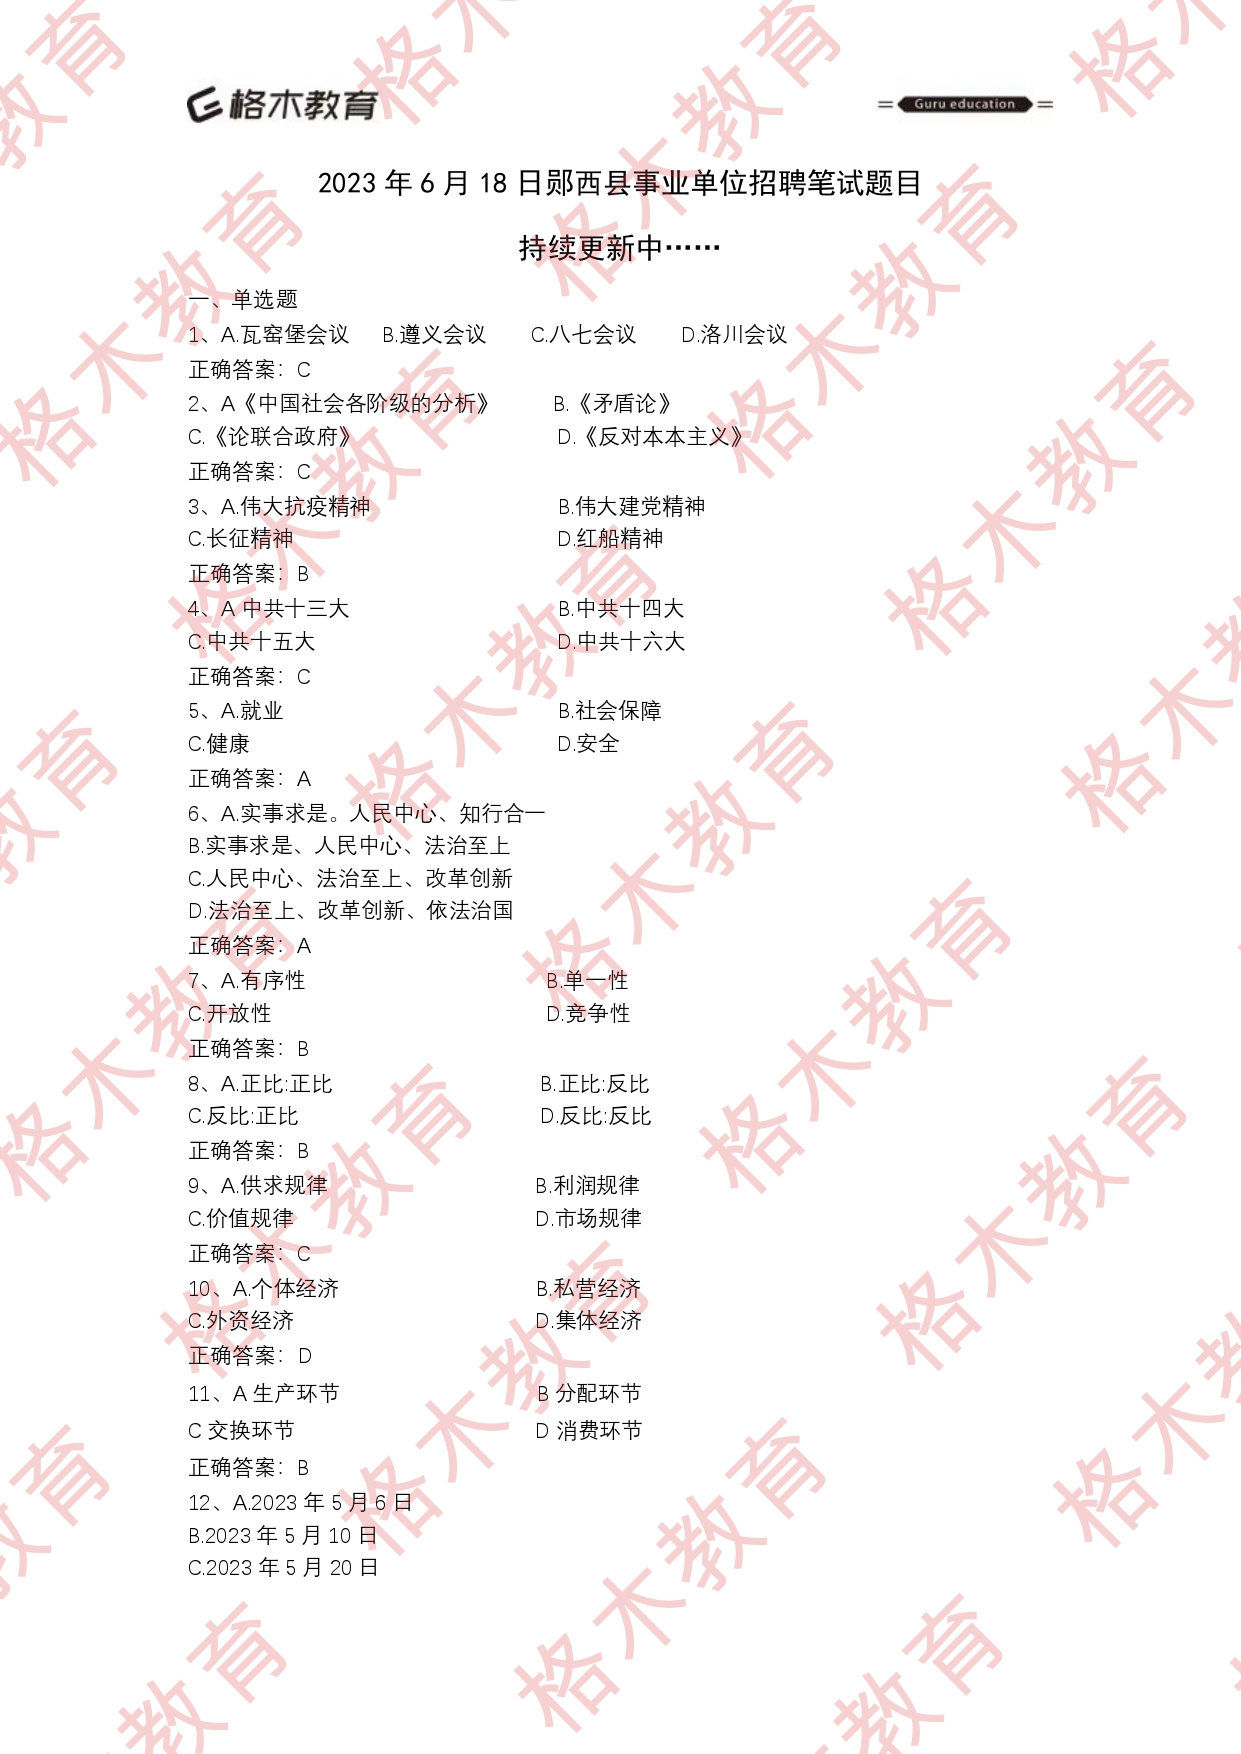 【格木】2023年6月18日郧西县事业单位招聘笔试估分